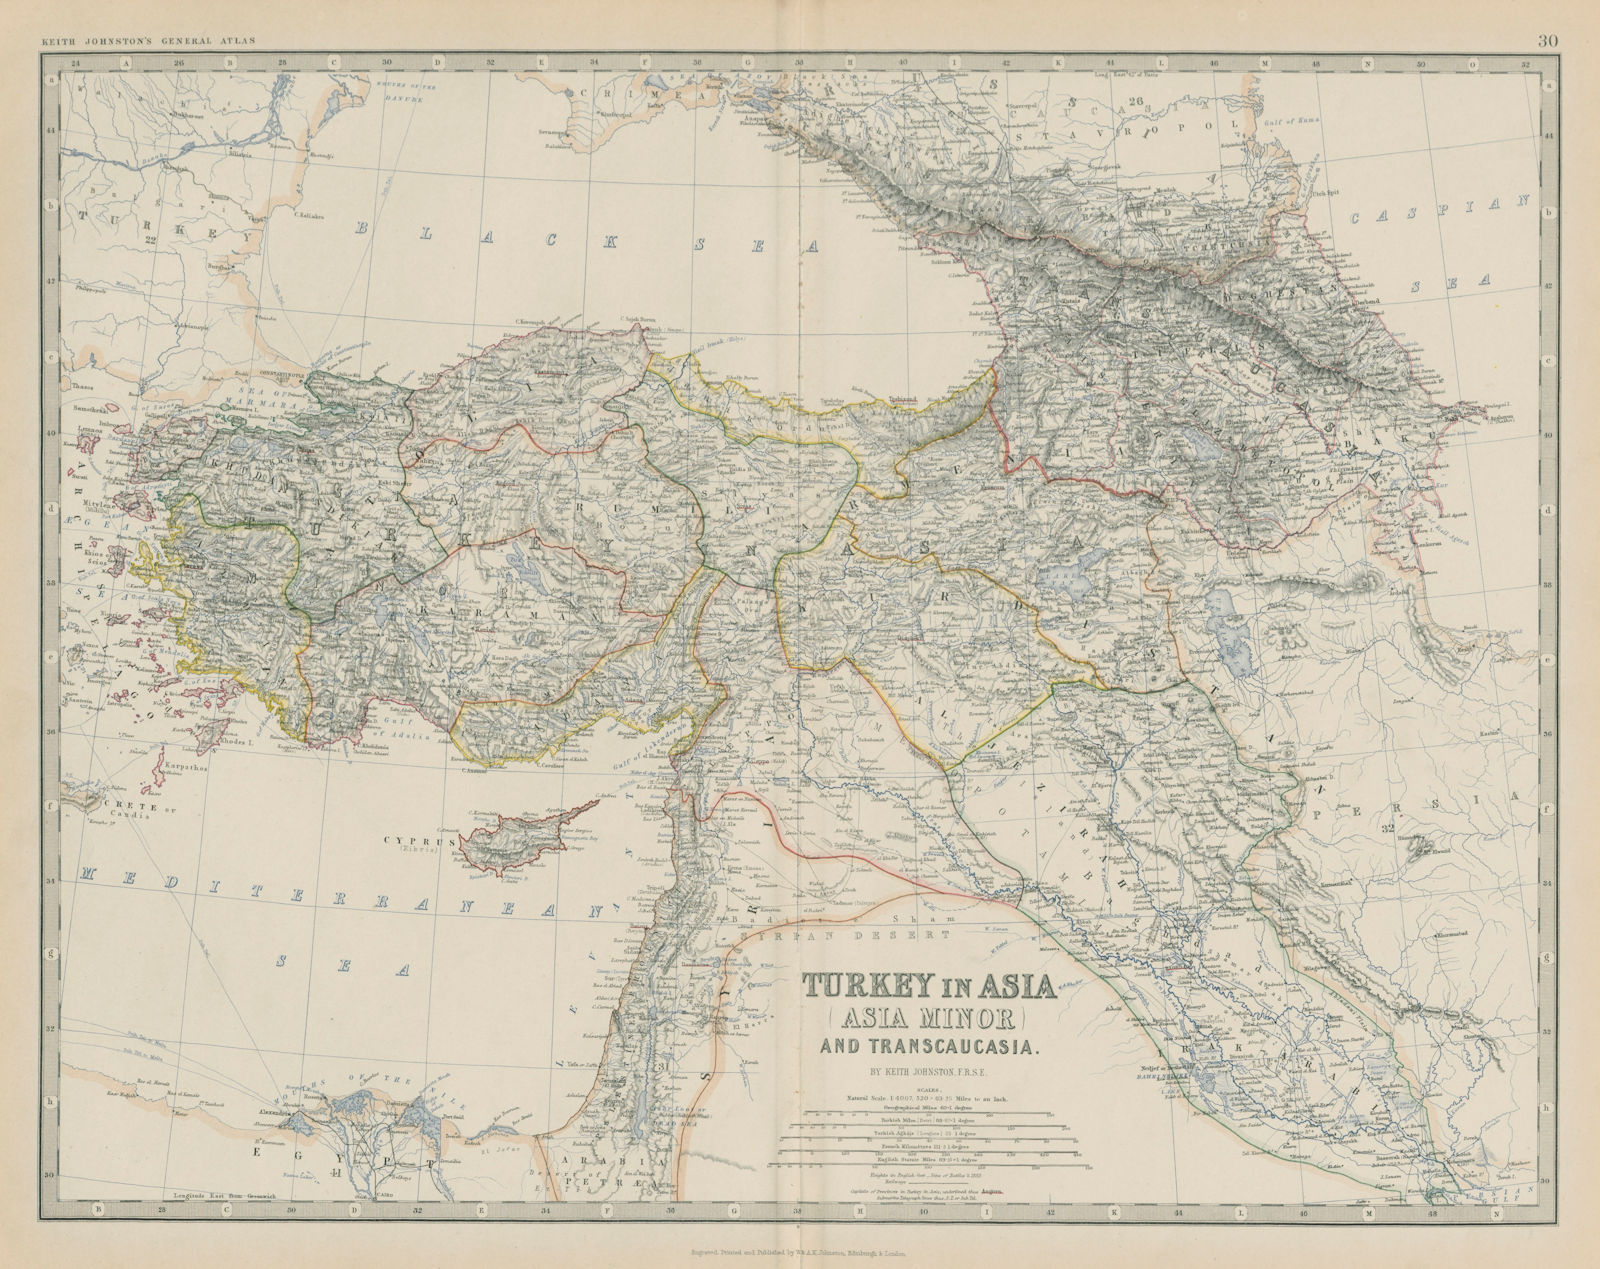 Turkey in Asia (Asia Minor) & Transcaucasia. Levant. 50x60cm. JOHNSTON 1879 map